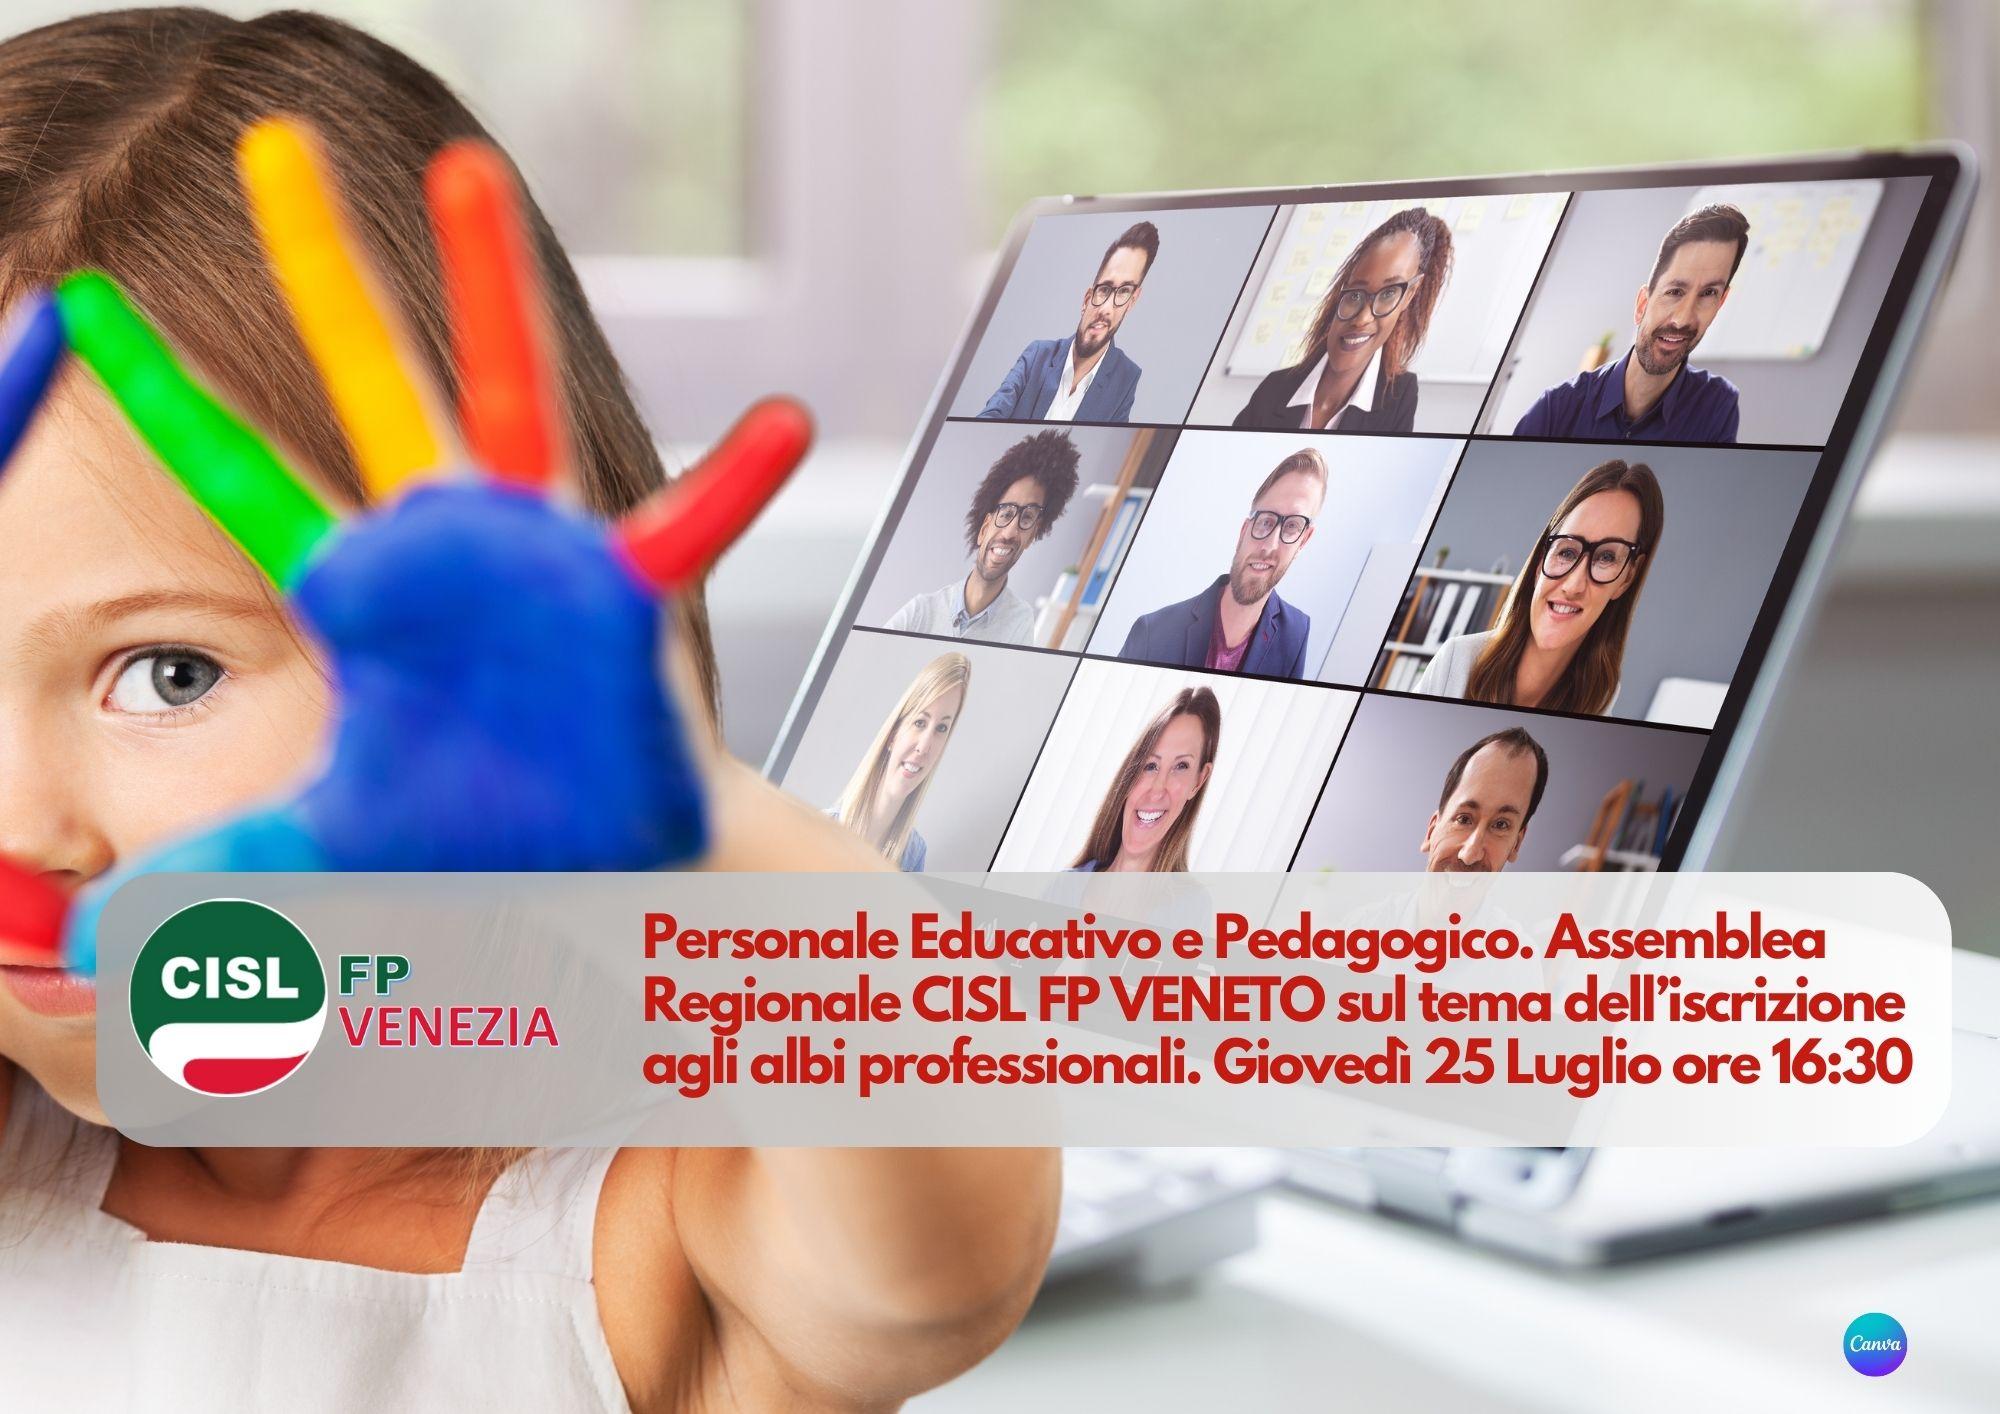 CISL FP Venezia. Personale educativo e pedagogico: 25 luglio ore 16.30 assemblea regionale sul tema dell'ordinamento